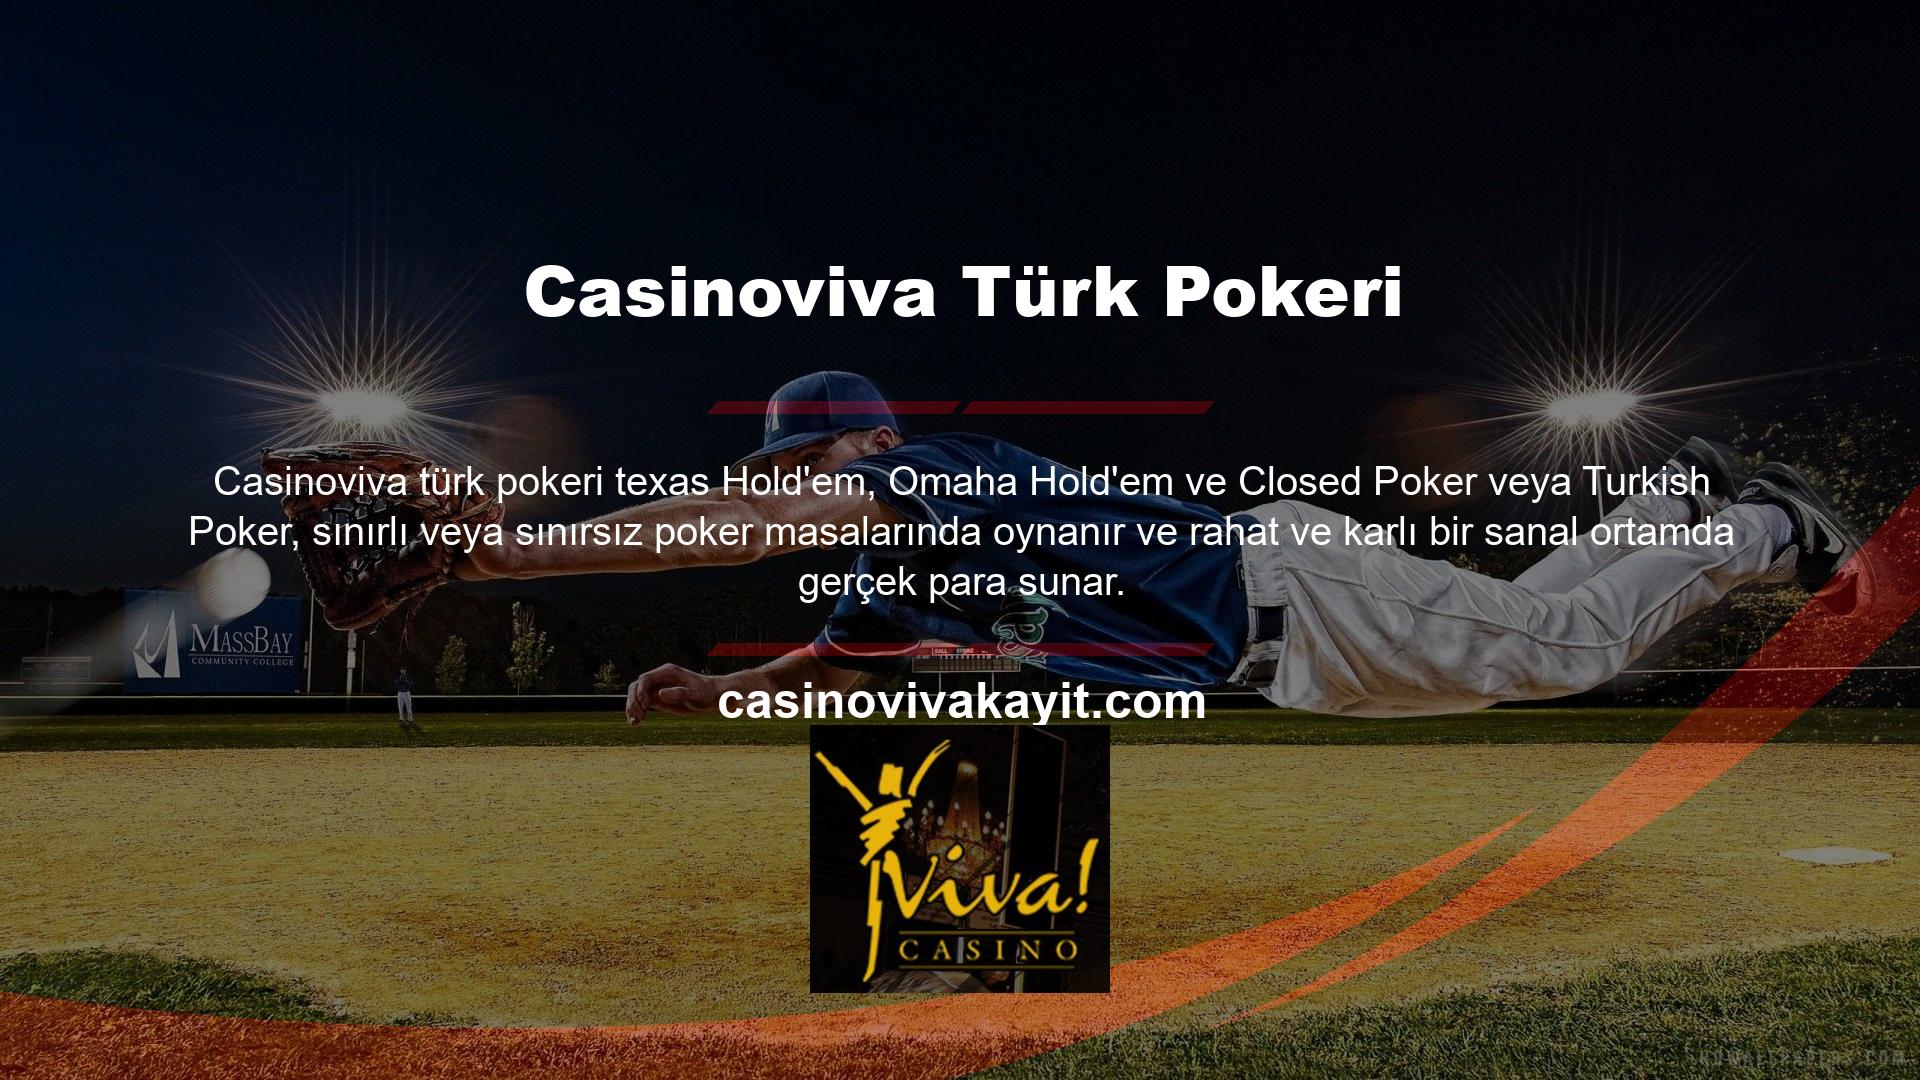 Casinoviva, Türk pokeri konusunda diğer benzer sitelere göre daha gelişmiş durumda